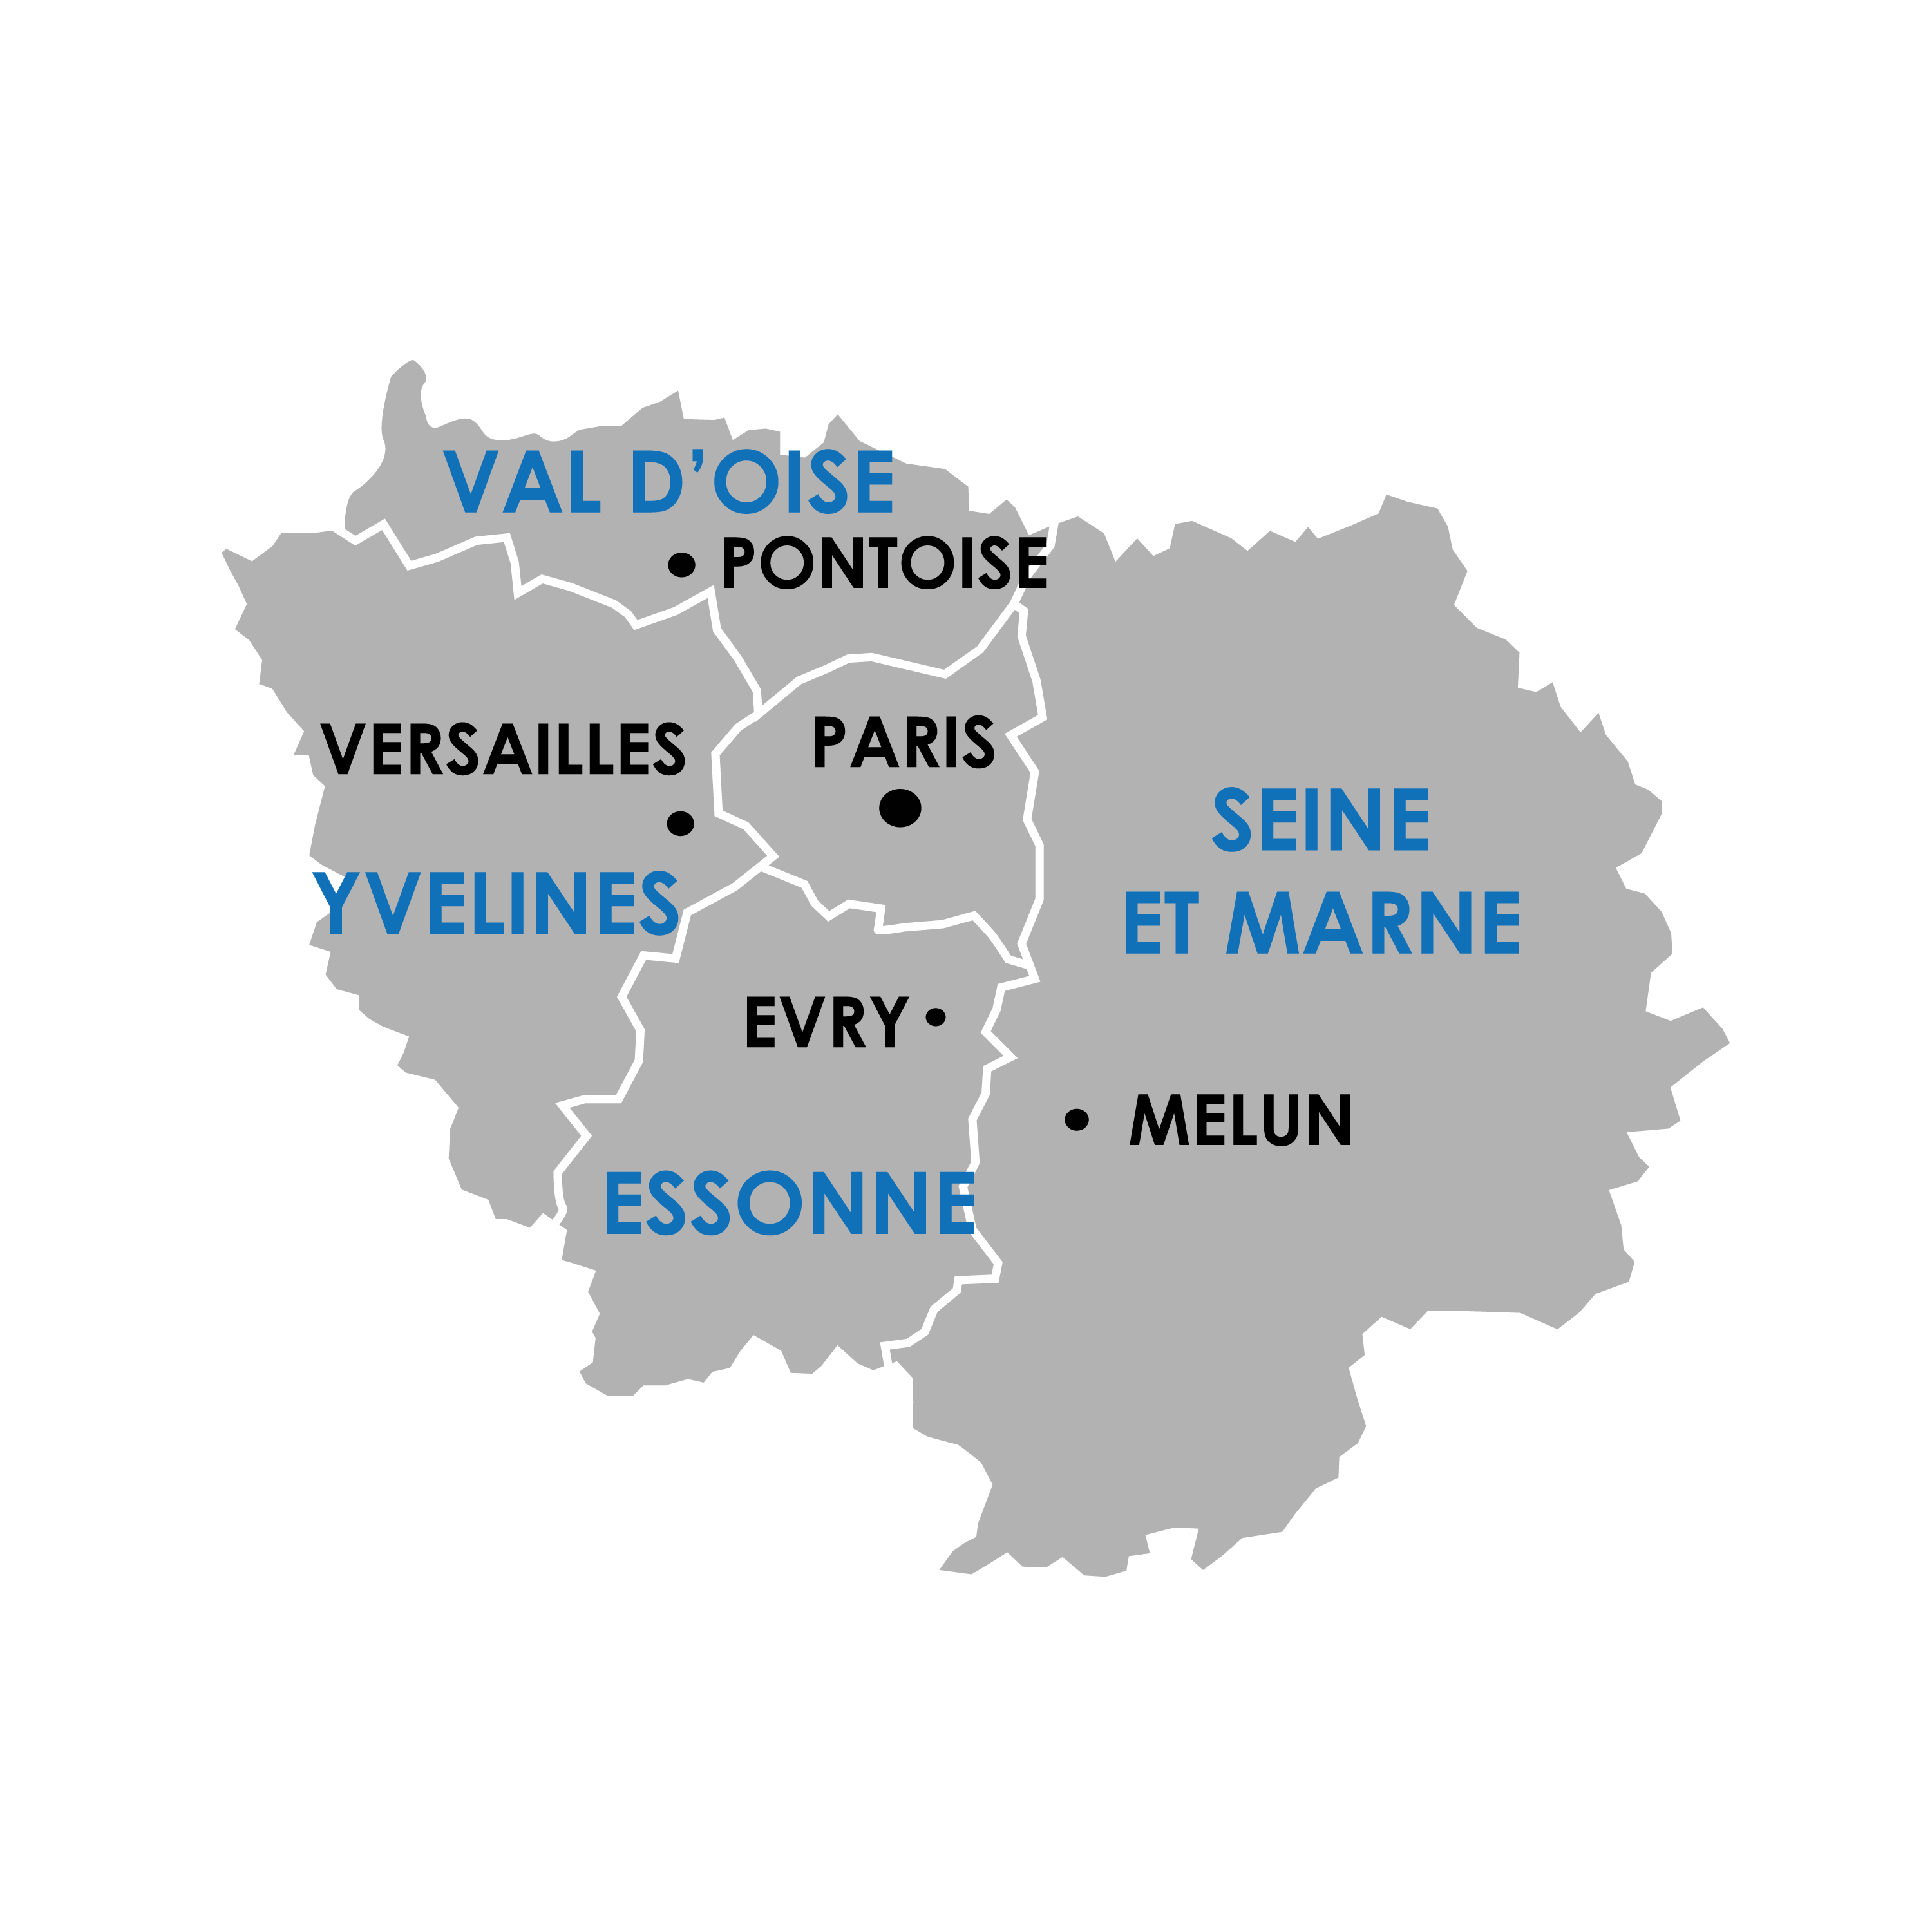 AFEO intervient en région Île de France pour tous vos besoins d'ascenseurs, maintenance, dépannage et mise en accessibilité des bâtiments.